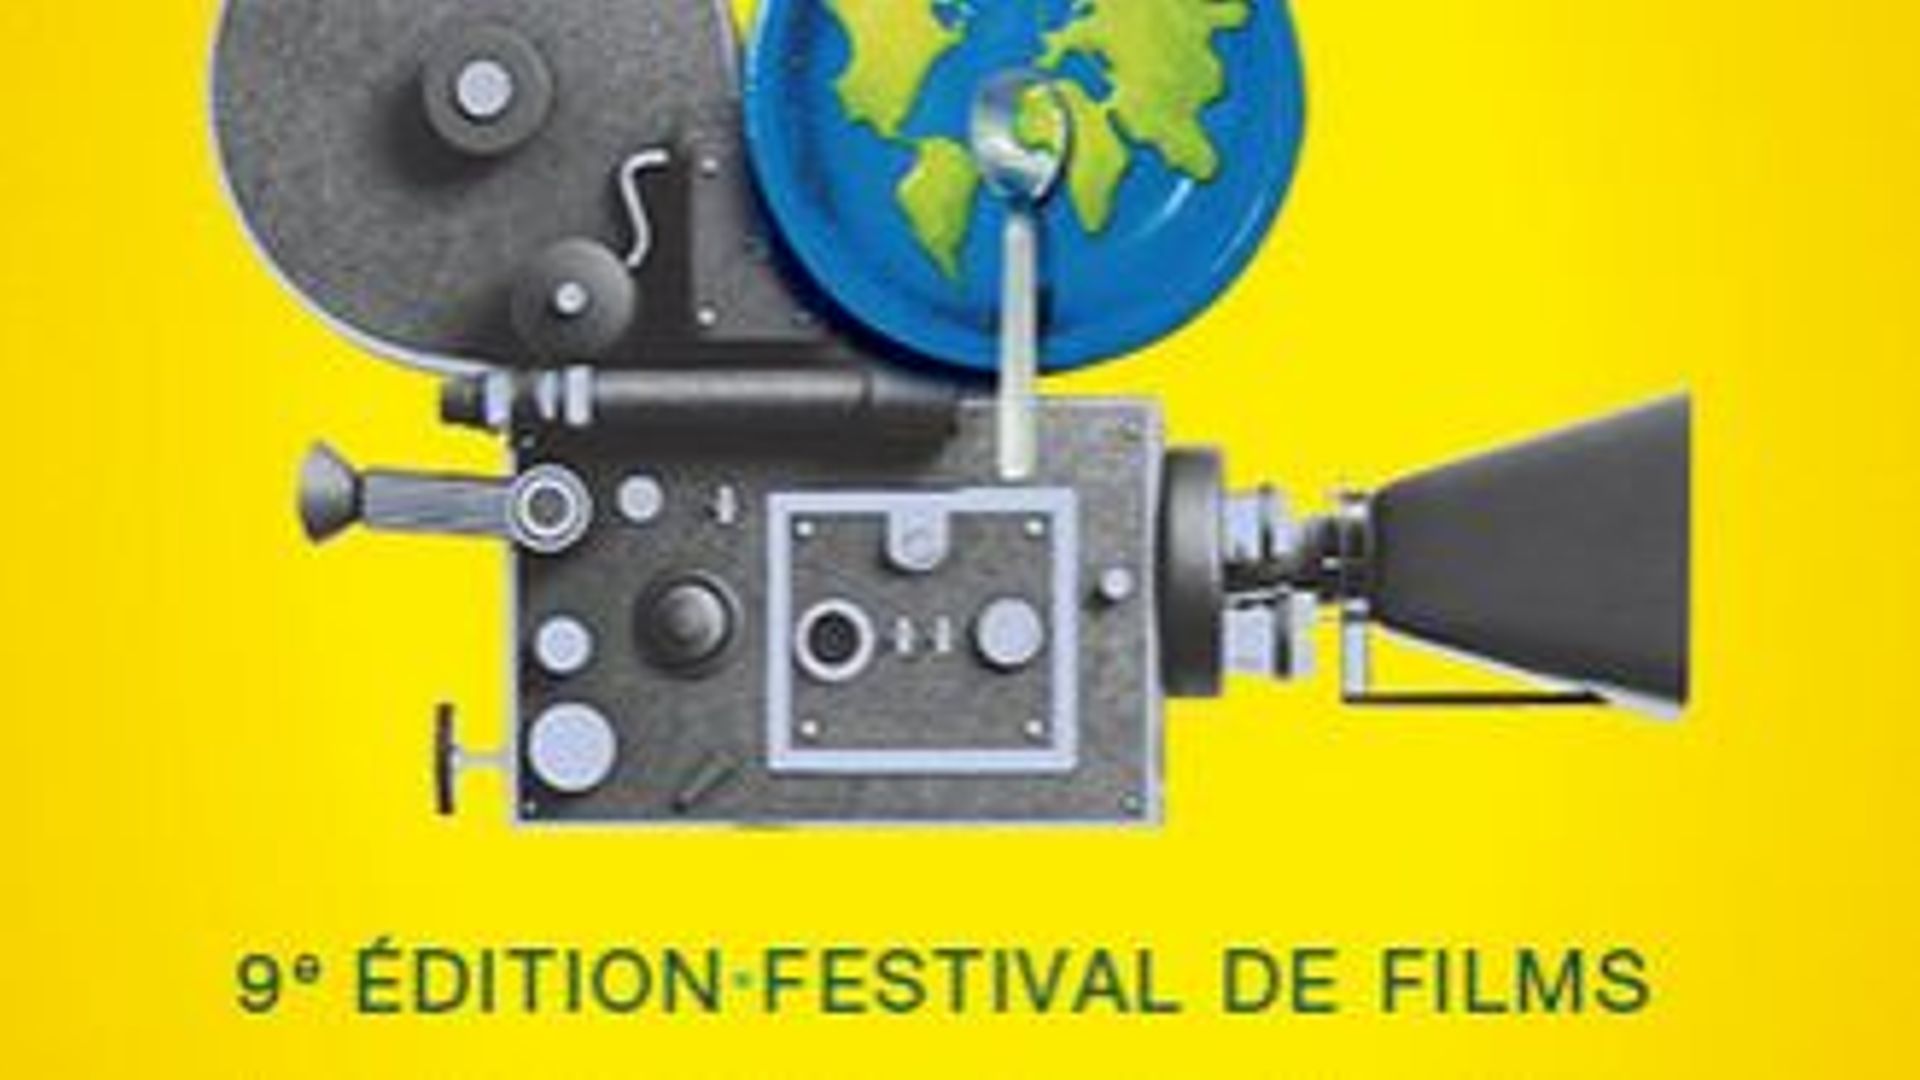 Festival Alimenterre, du 12 au 30 octobre 2017 à Bruxelles et dans cinq villes wallonnes (Namur, Charleroi, Liège, Ottignies-Louvain-la-Neuve et Arlon).